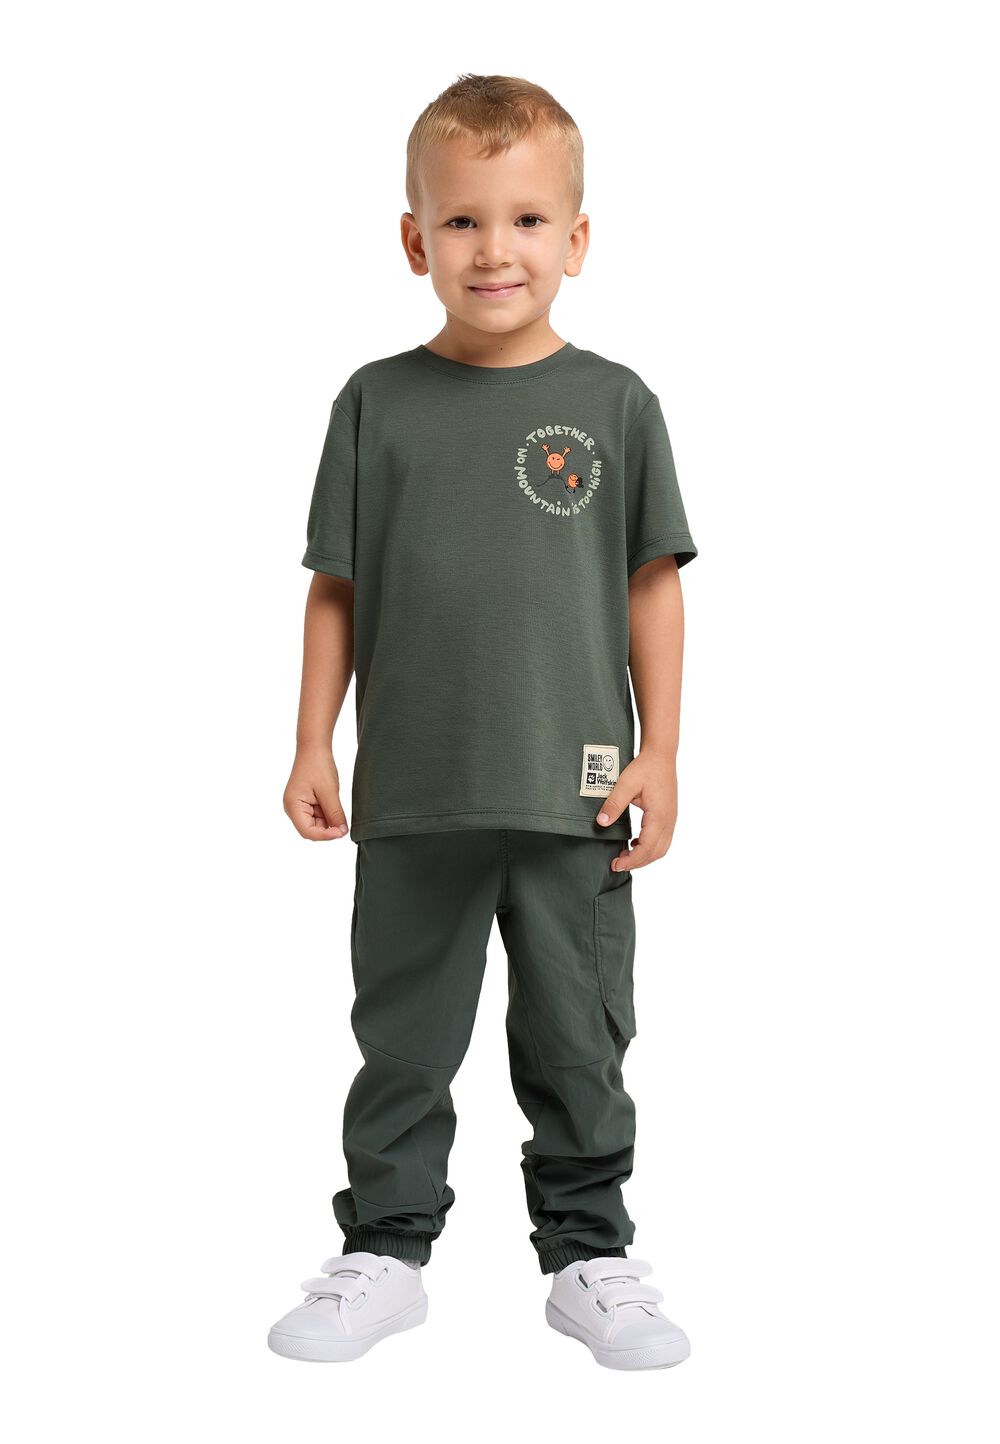 Jack Wolfskin Smileyworld Together T-Shirt Kids Functioneel shirt Kinderen 140 grijs slate green